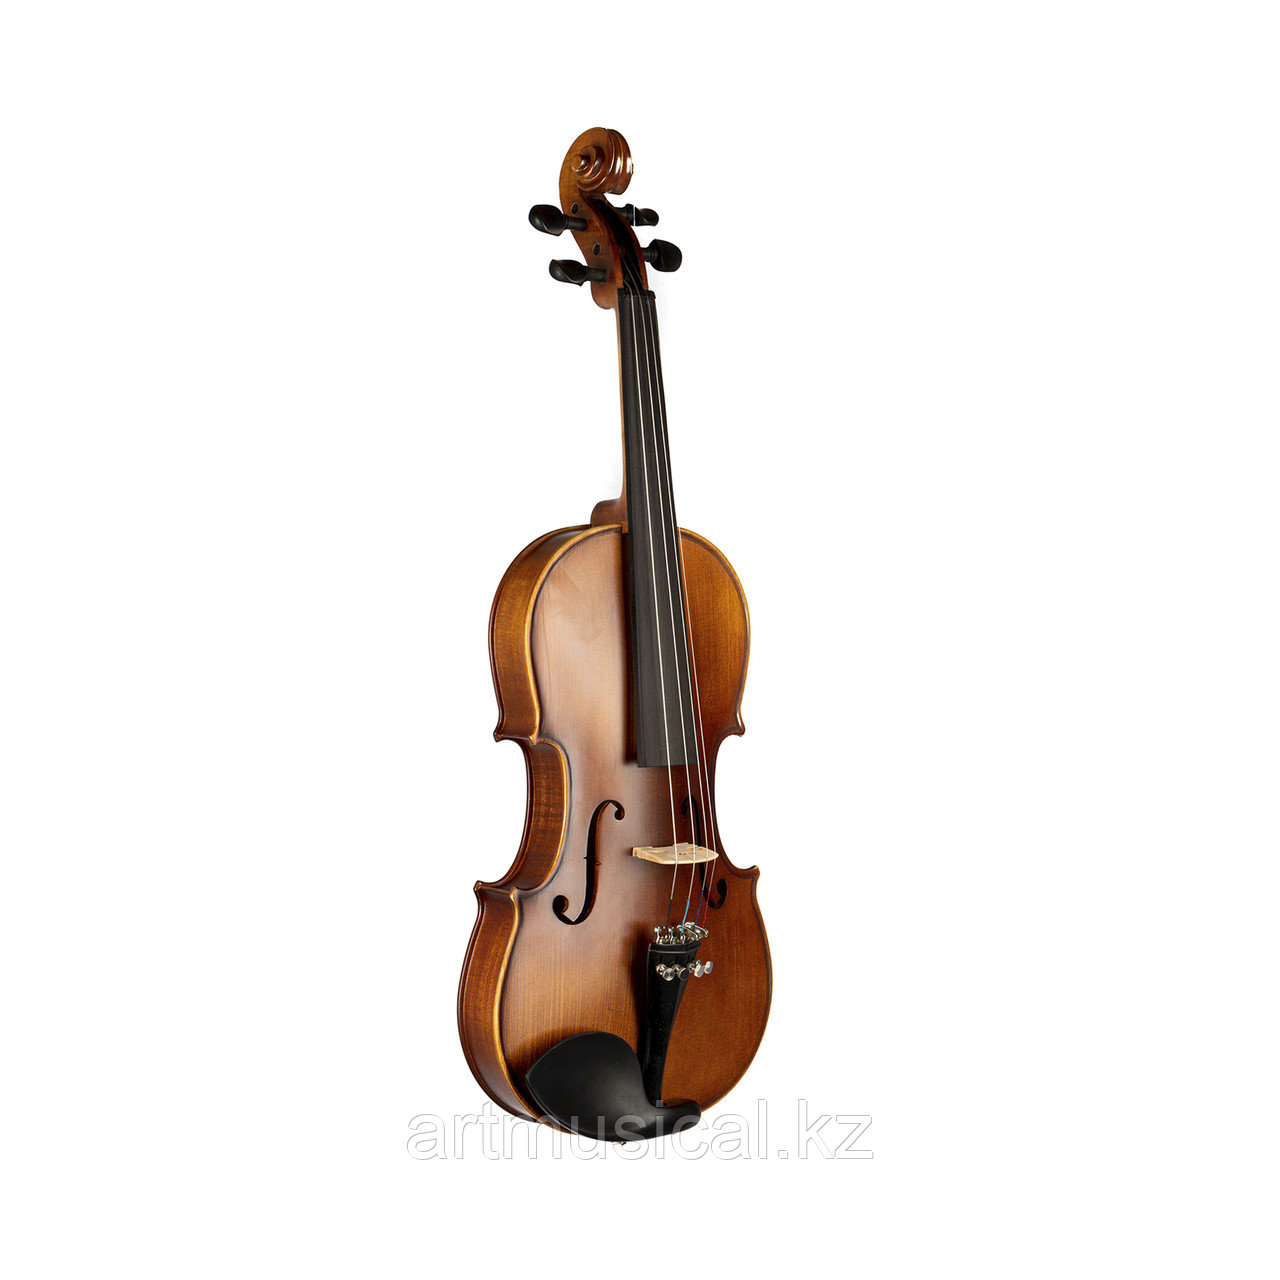 Альт скрипка Sonata размер 16.5" (42см)